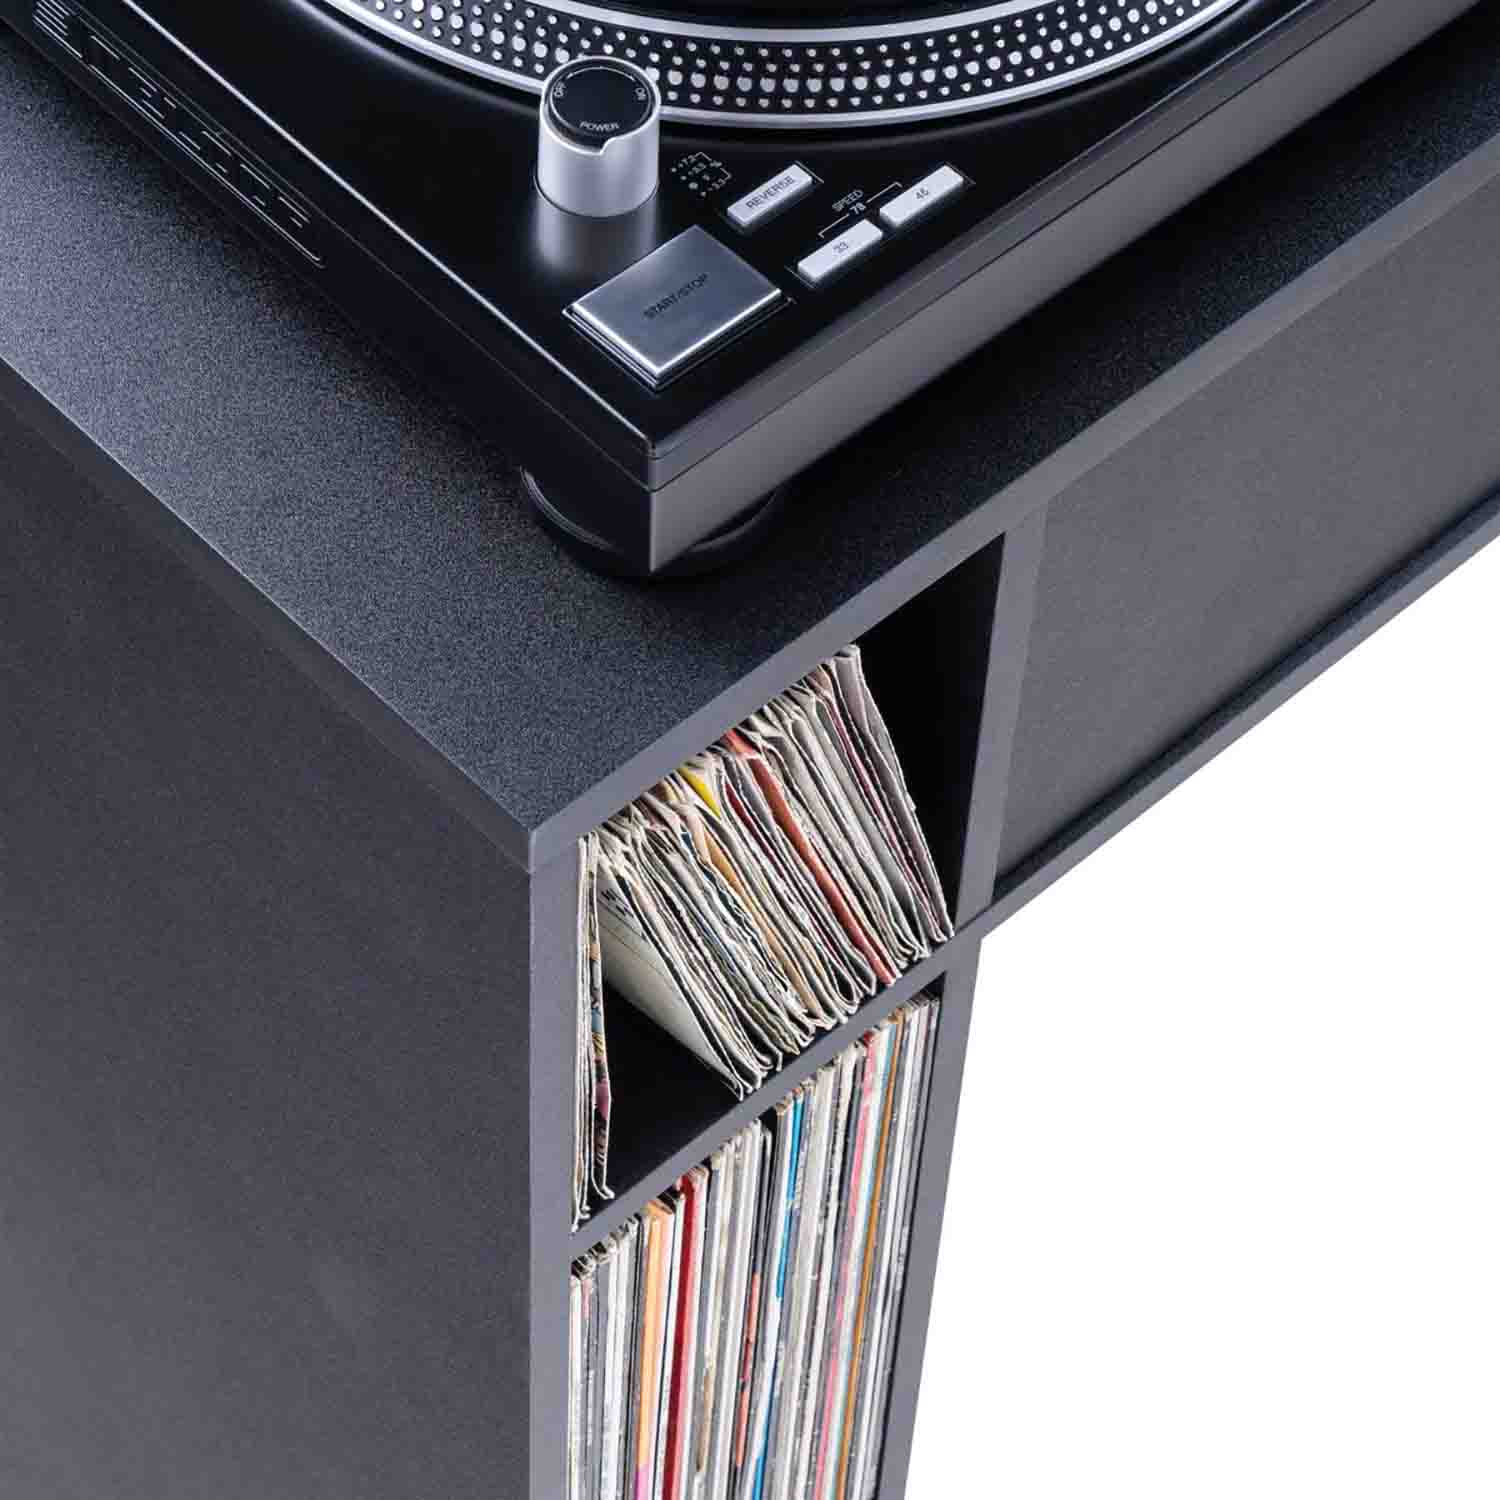 Glorious Modular DJ Mix Station with 6-Part Design - Black - Hollywood DJ